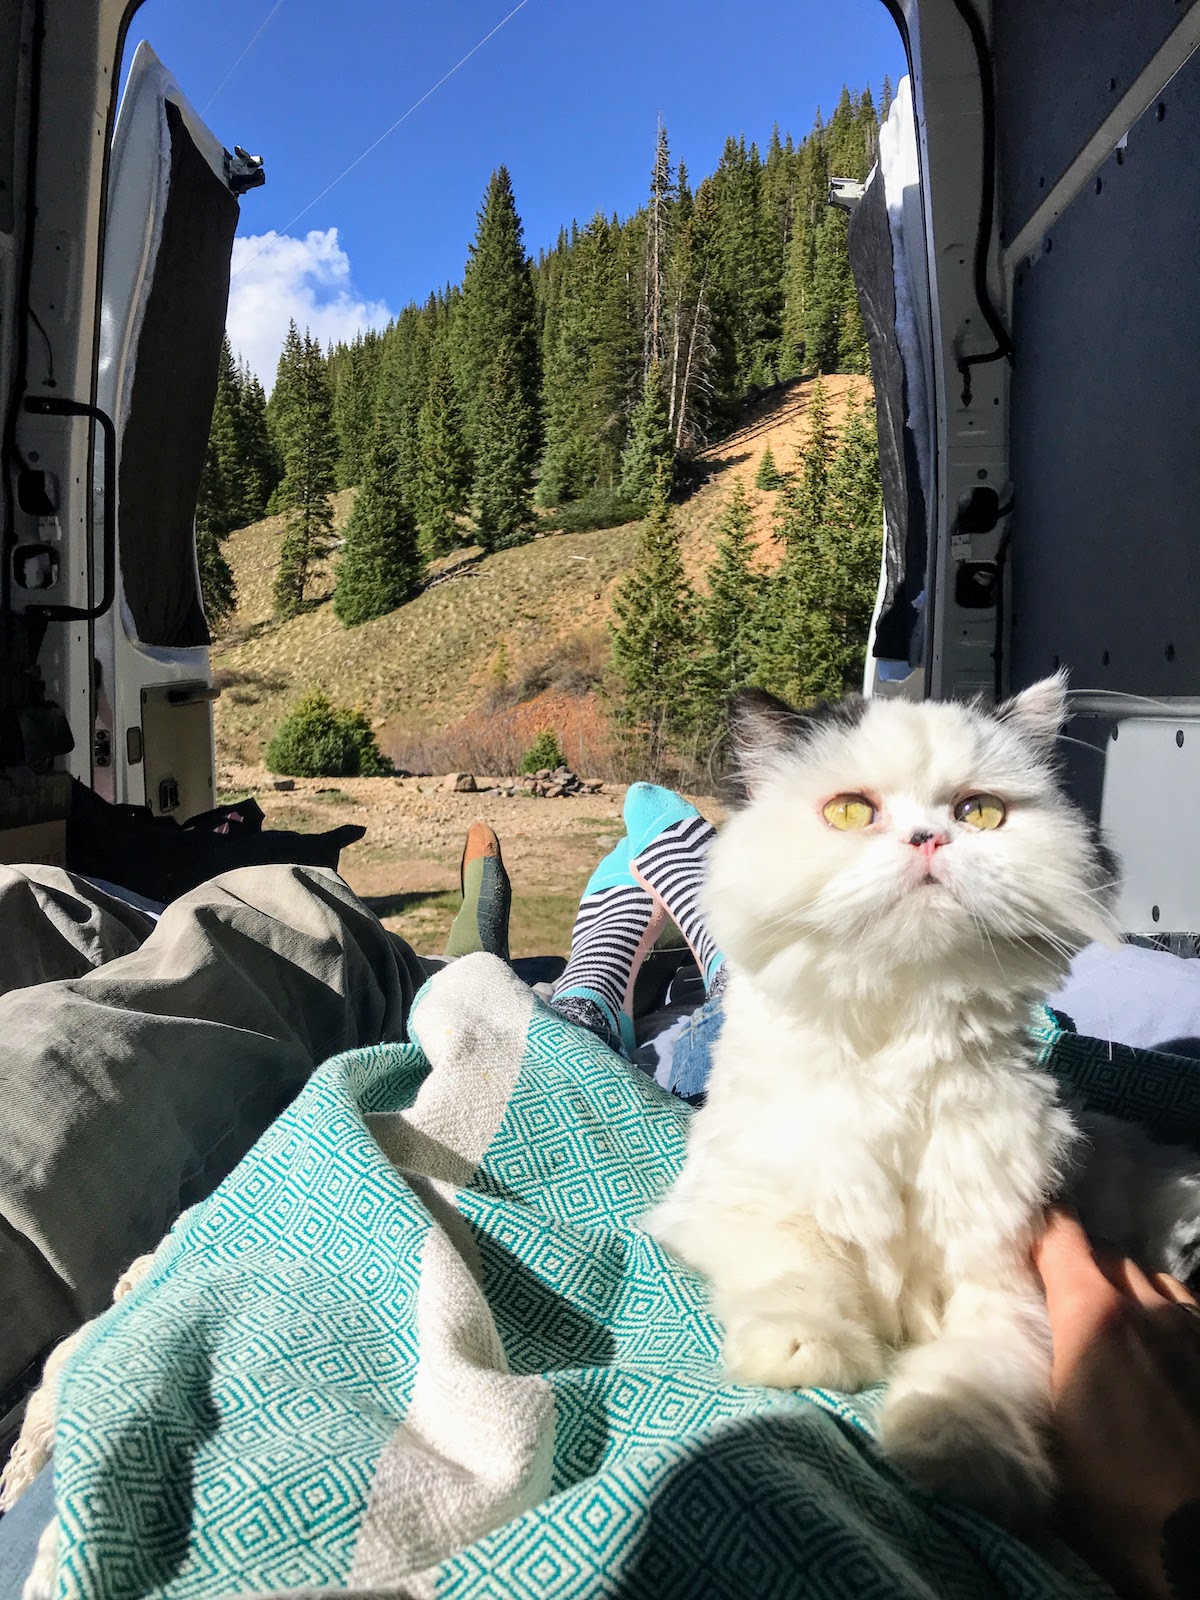 Cat in a campervan